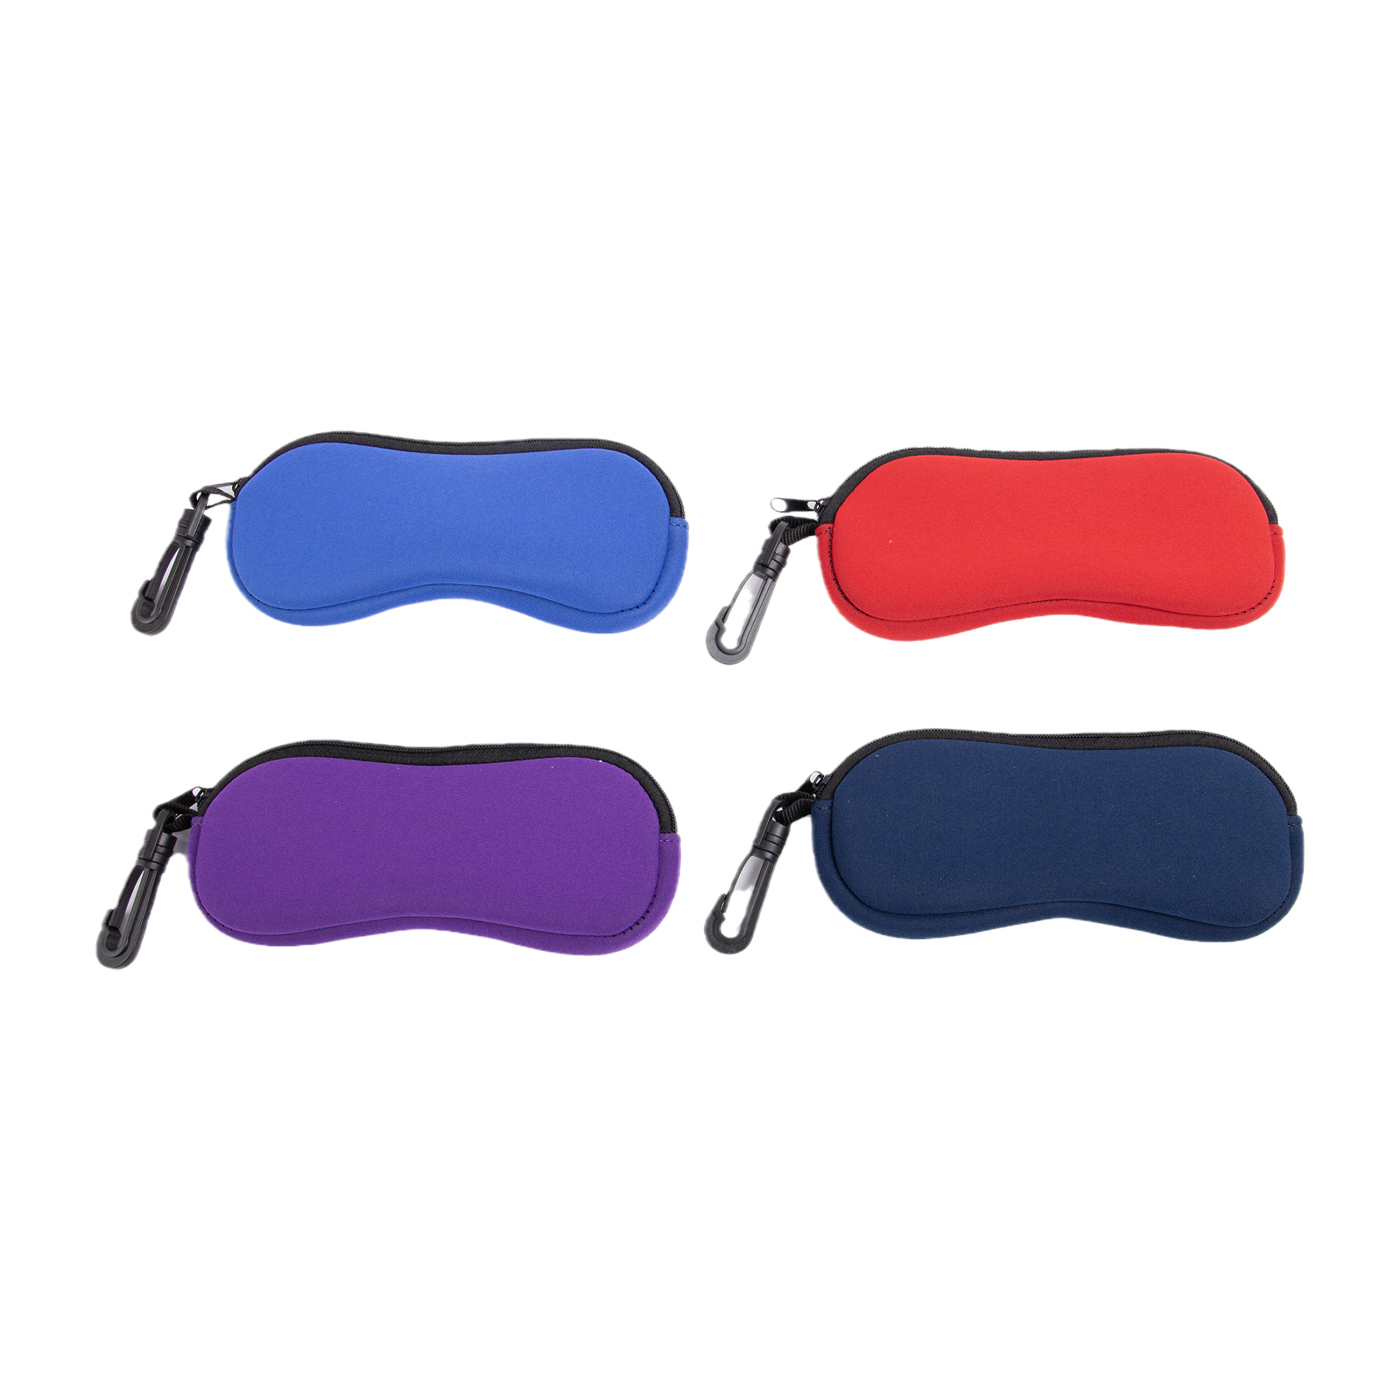 Custom Neoprene Eyeglasses Case With Carabiner2